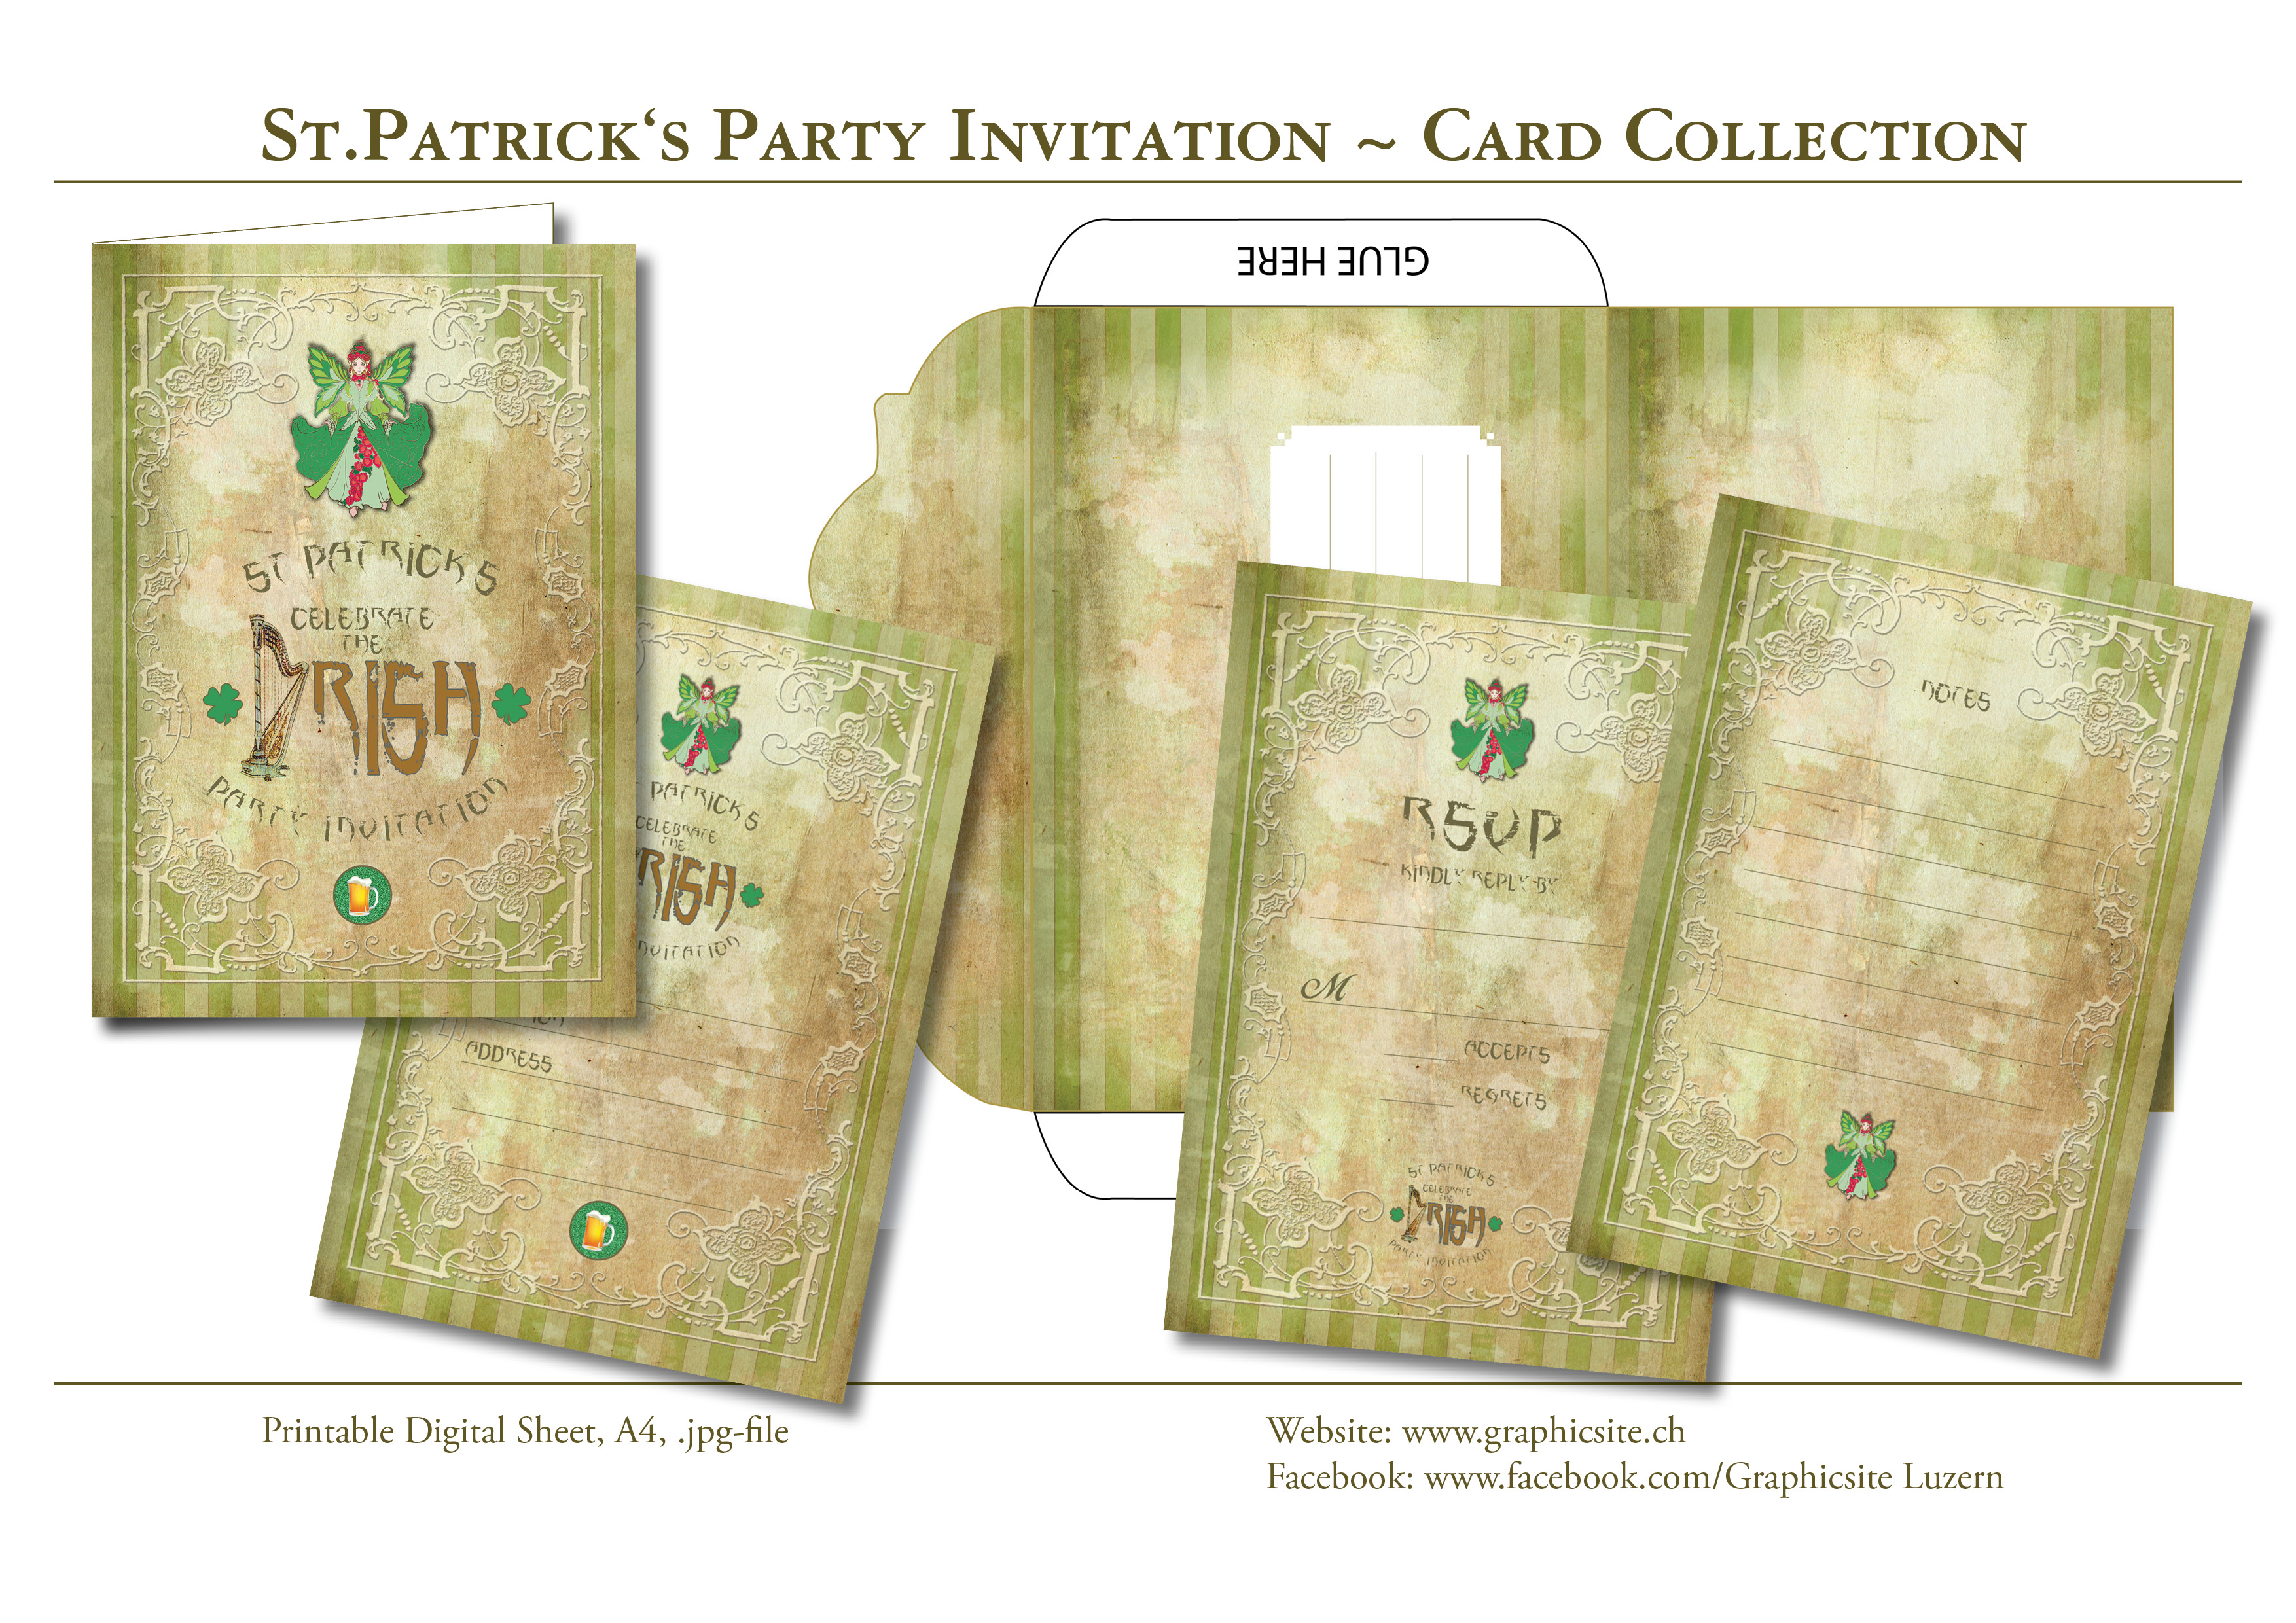 Karten selber drucken - Grafiker Luzern - St.Patricks Party - Einladungen - #karten, #selber, #drucken, #gestalteln, #basteln, #party, #einladungen, #luzern, #schweiz,